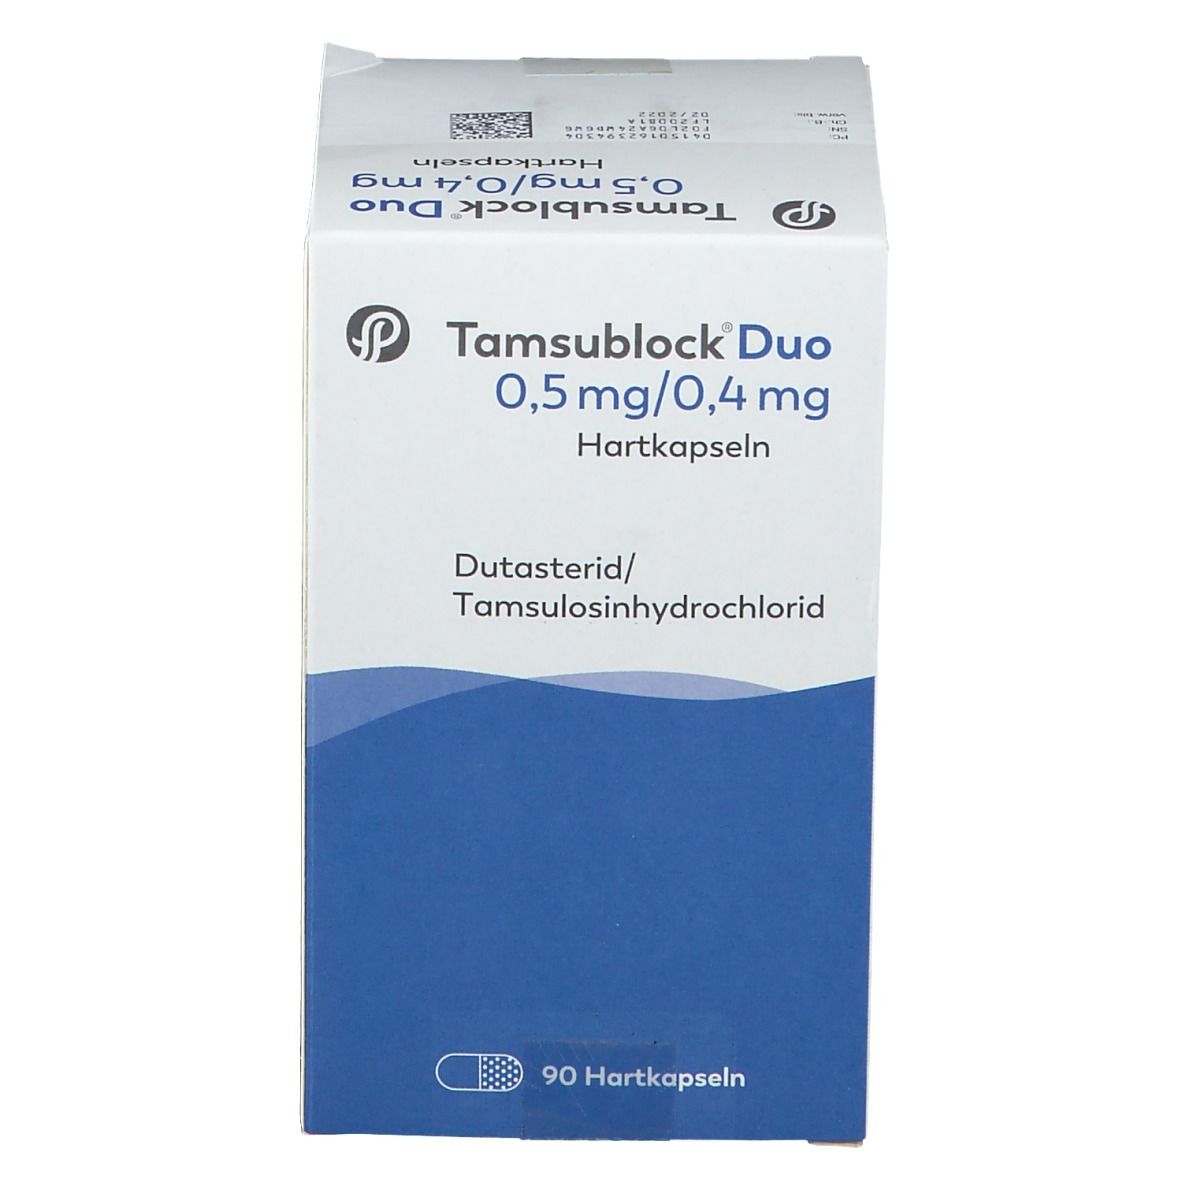 Tamsublock® Duo 0,5 mg/0,4 mg